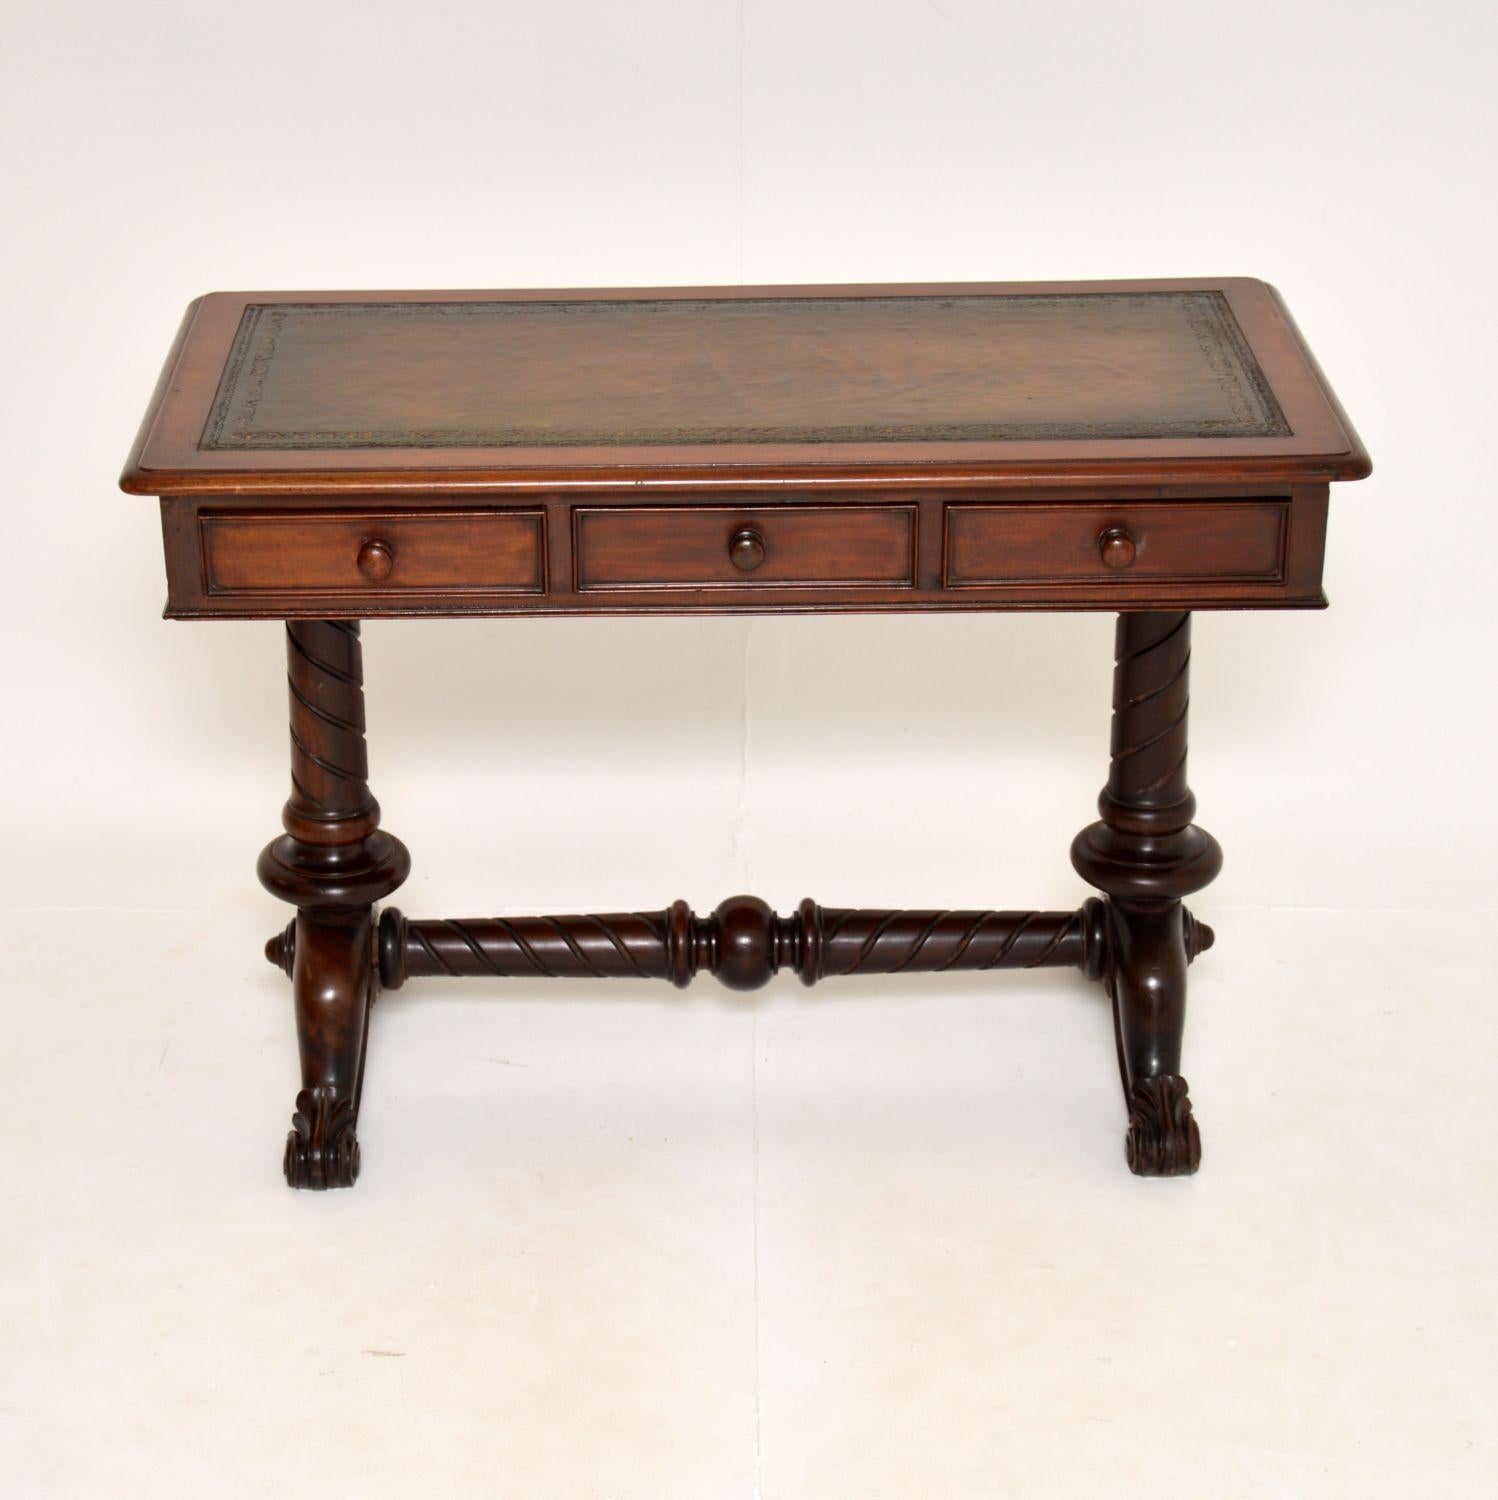 Ein fantastischer originaler Schreibtisch aus der Zeit Wilhelms IV. Sie wurde in England hergestellt und stammt aus der Zeit um 1830-1840.

Es ist von erstaunlicher Qualität und hat schöne Proportionen. Der Aufsatz hat drei Schubladen mit